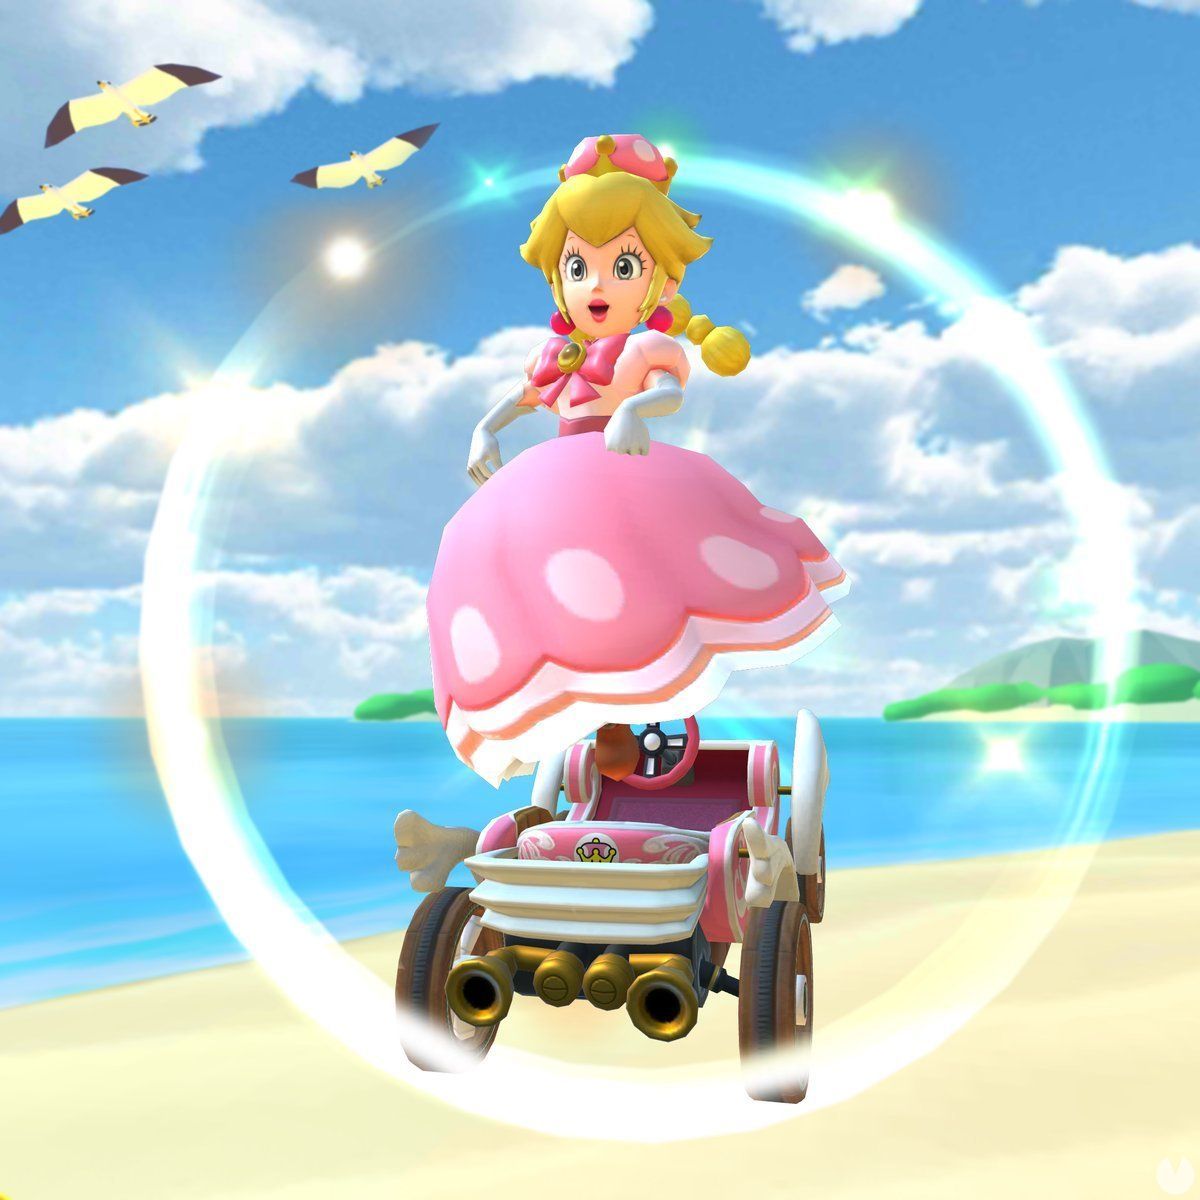 Peachette será uno de los personajes disponibles en Mario Kart Tour